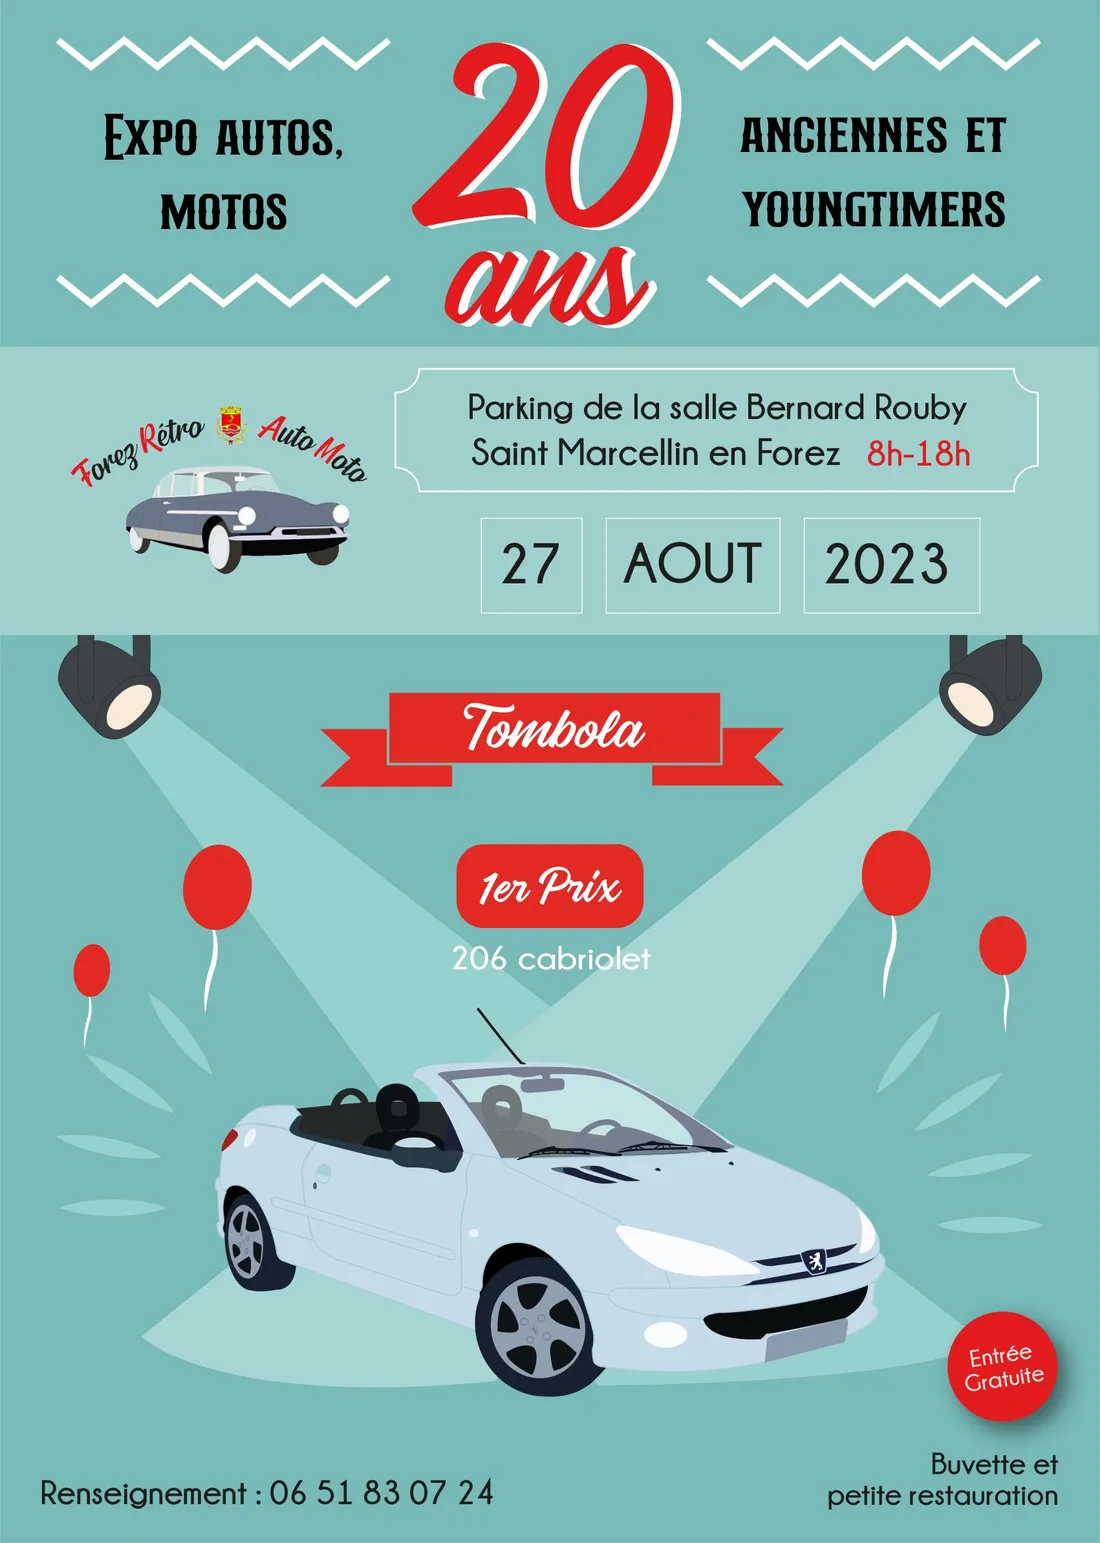 20ème anniversaire expo autos, motos à St-Marcellin-en-Forez